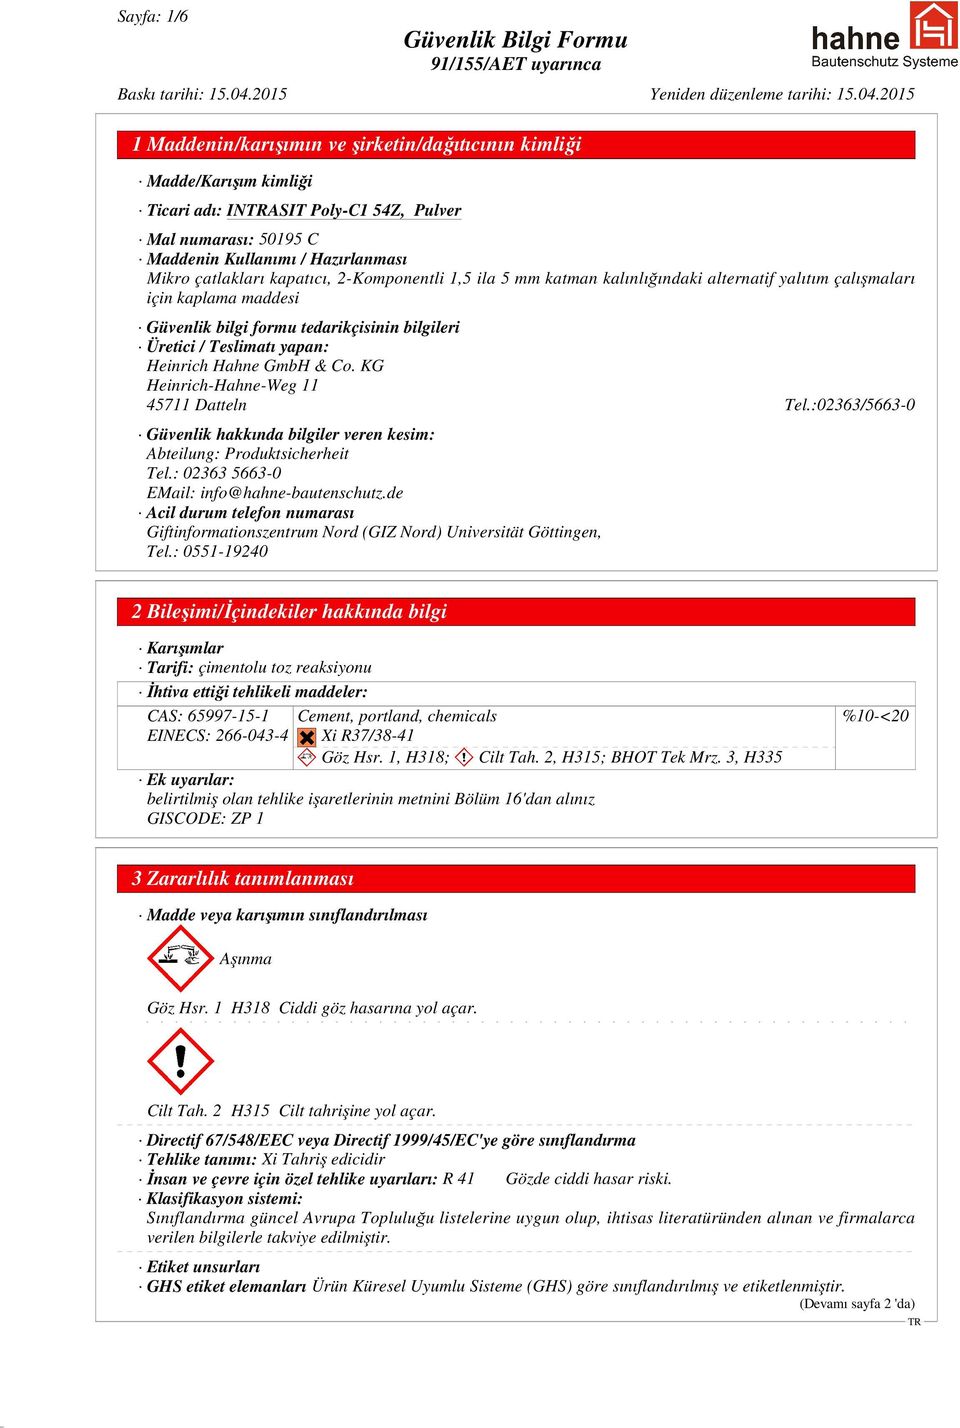 GmbH & Co. KG Heinrich-Hahne-Weg 11 45711 Datteln Tel.:02363/5663-0 Güvenlik hakkında bilgiler veren kesim: Abteilung: Produktsicherheit Tel.: 02363 5663-0 EMail: info@hahne-bautenschutz.